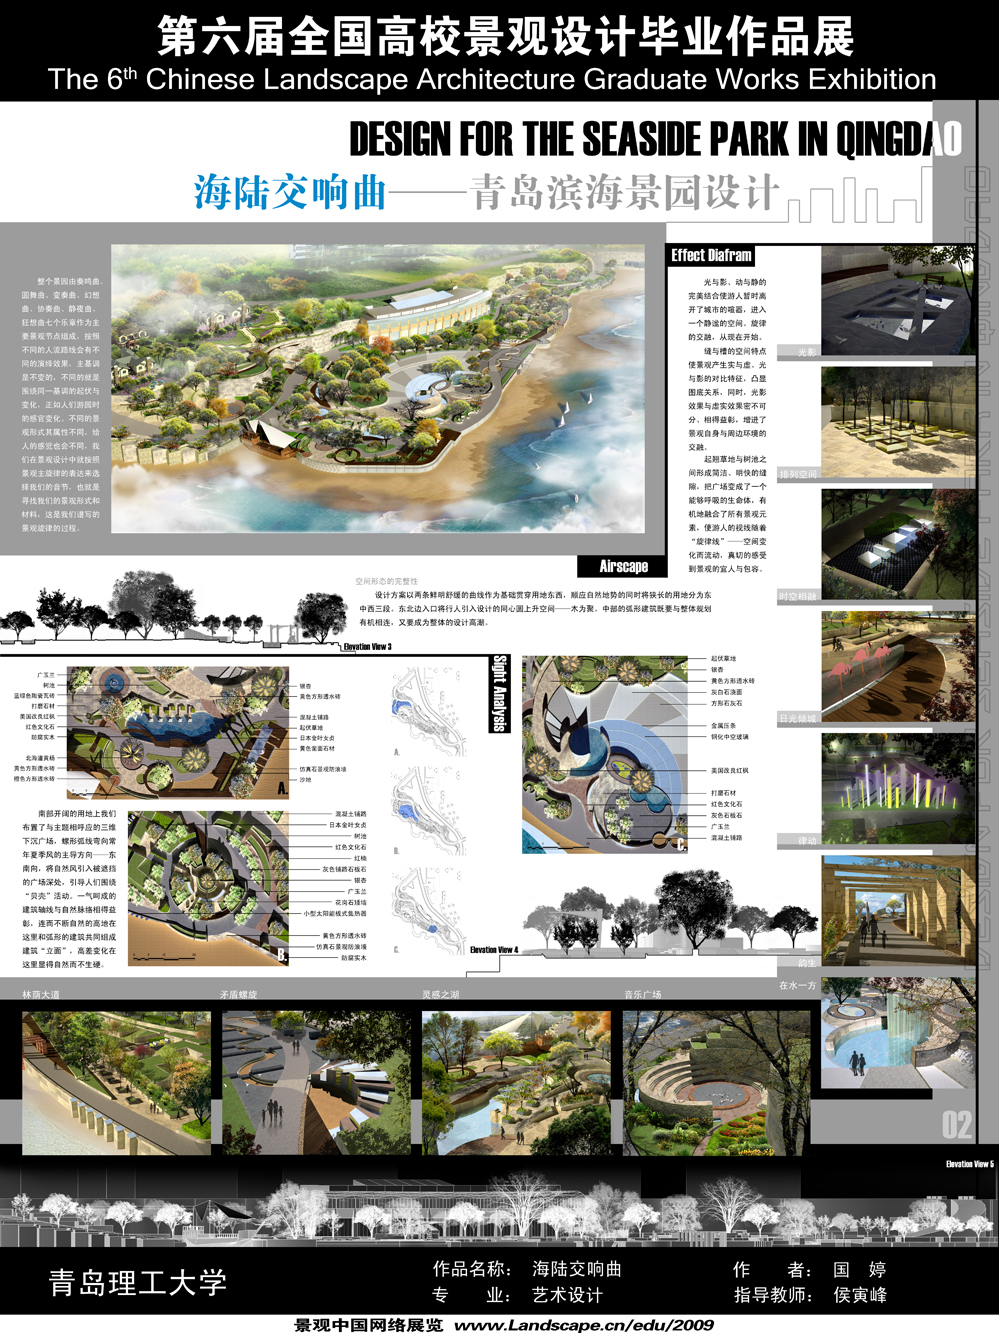 海陆交响曲——青岛滨水景园设计-2